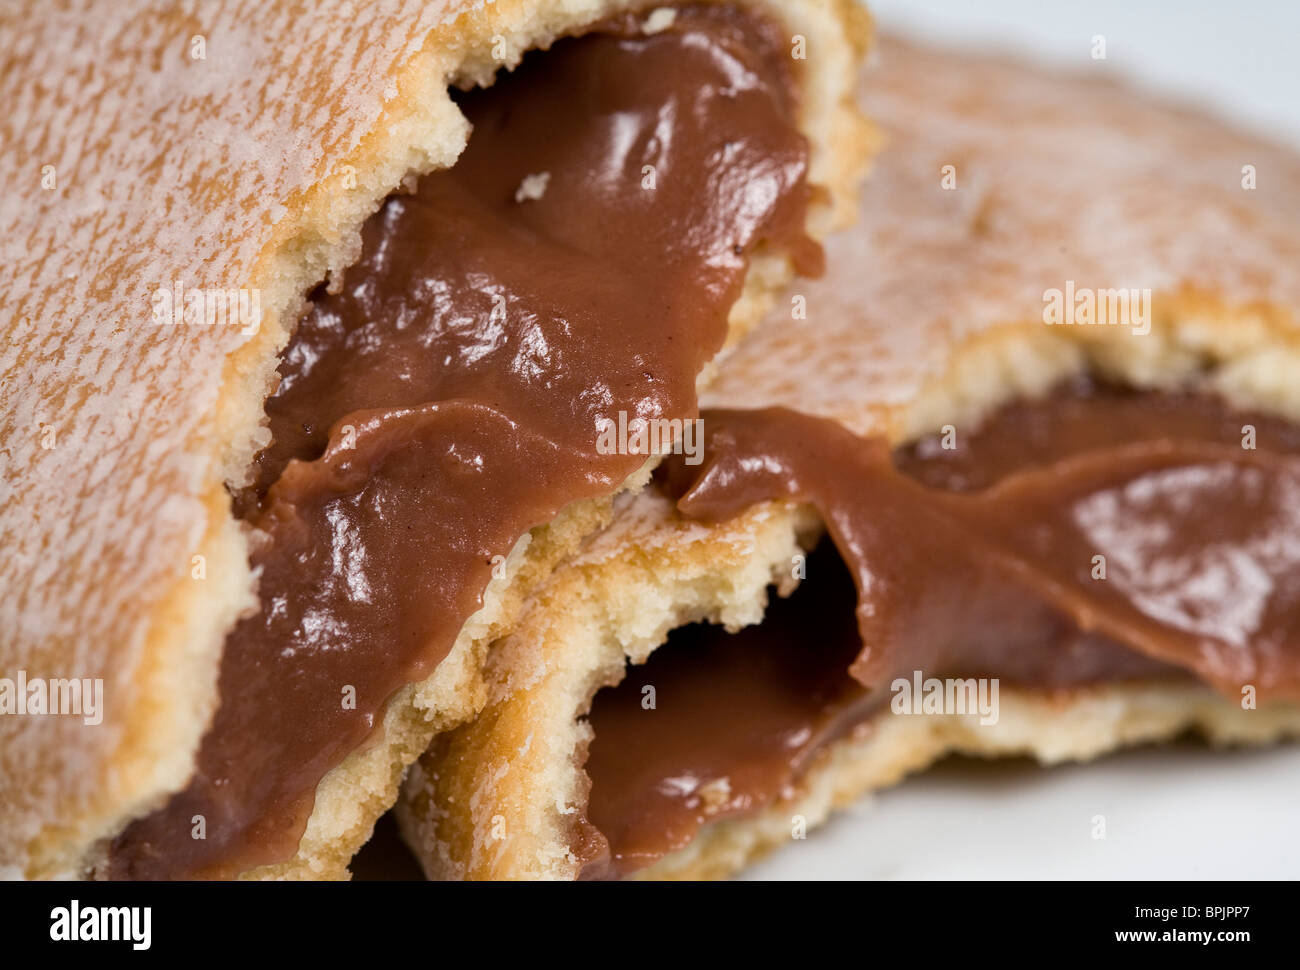 Hostess chocolate pudding pie. Stock Photo